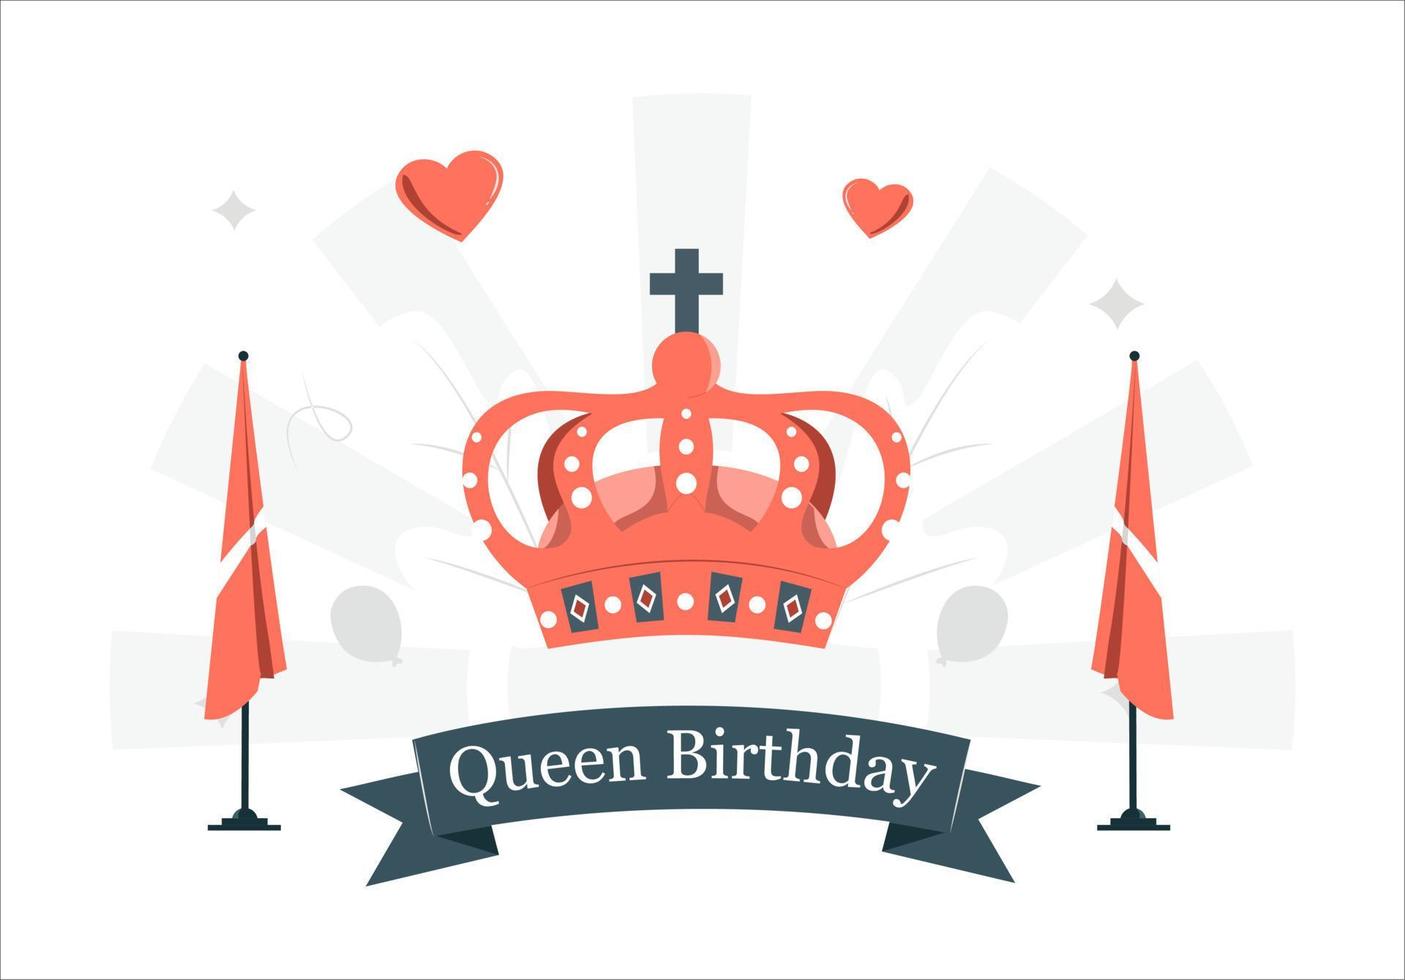 drottningens födelsedag. drottningens krona som en symbol för riket vektor